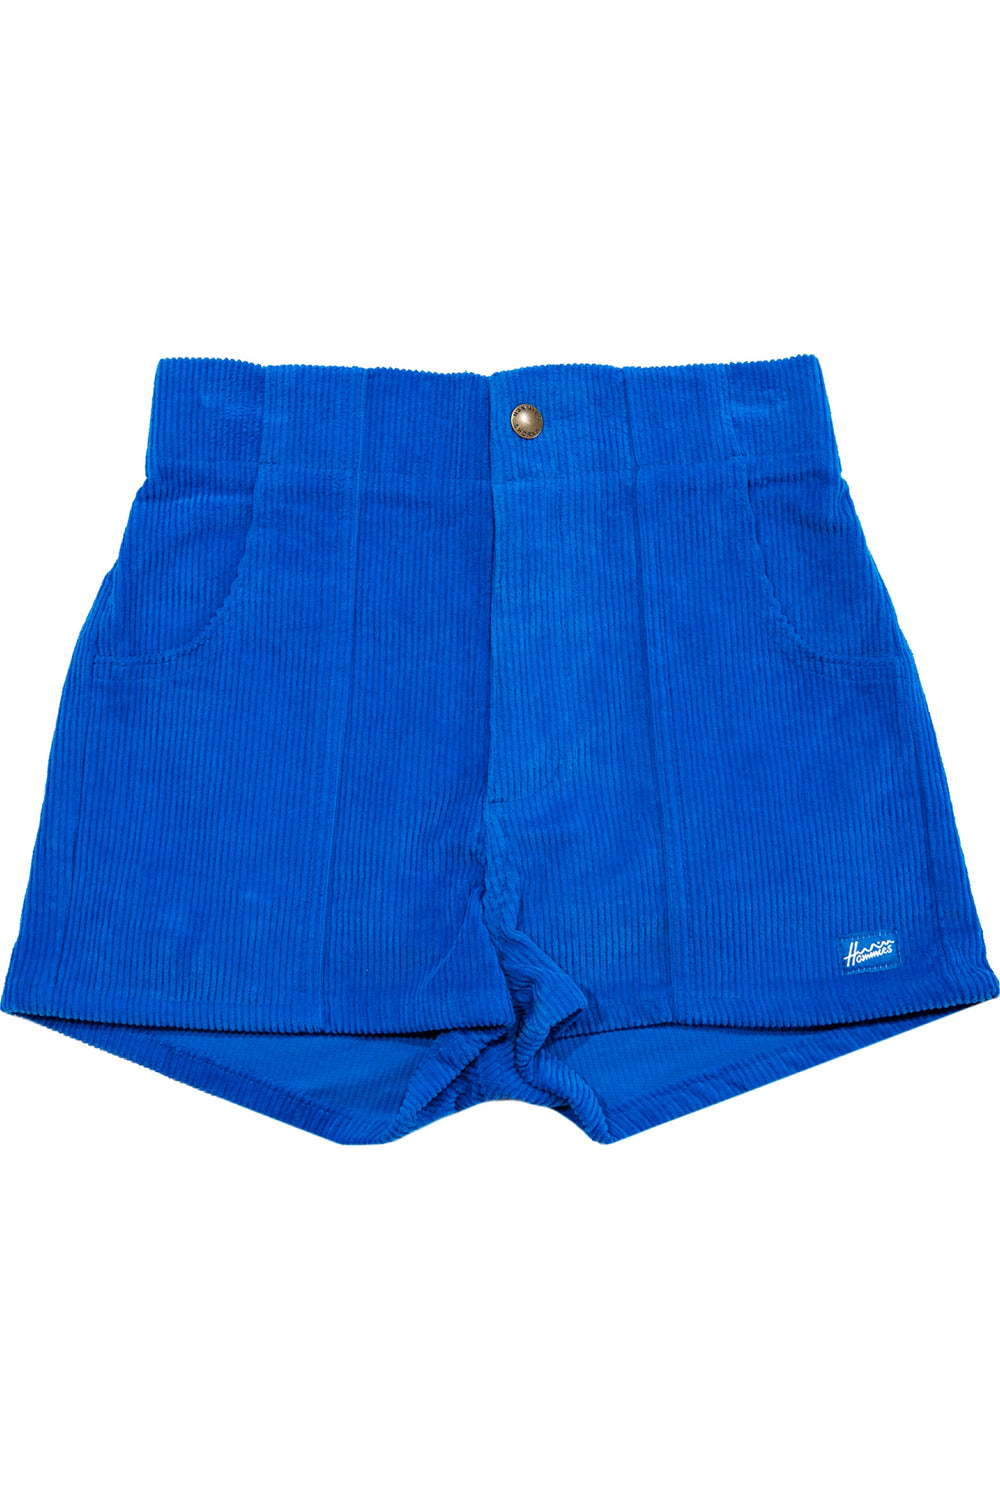 Blue Hammies Shorts